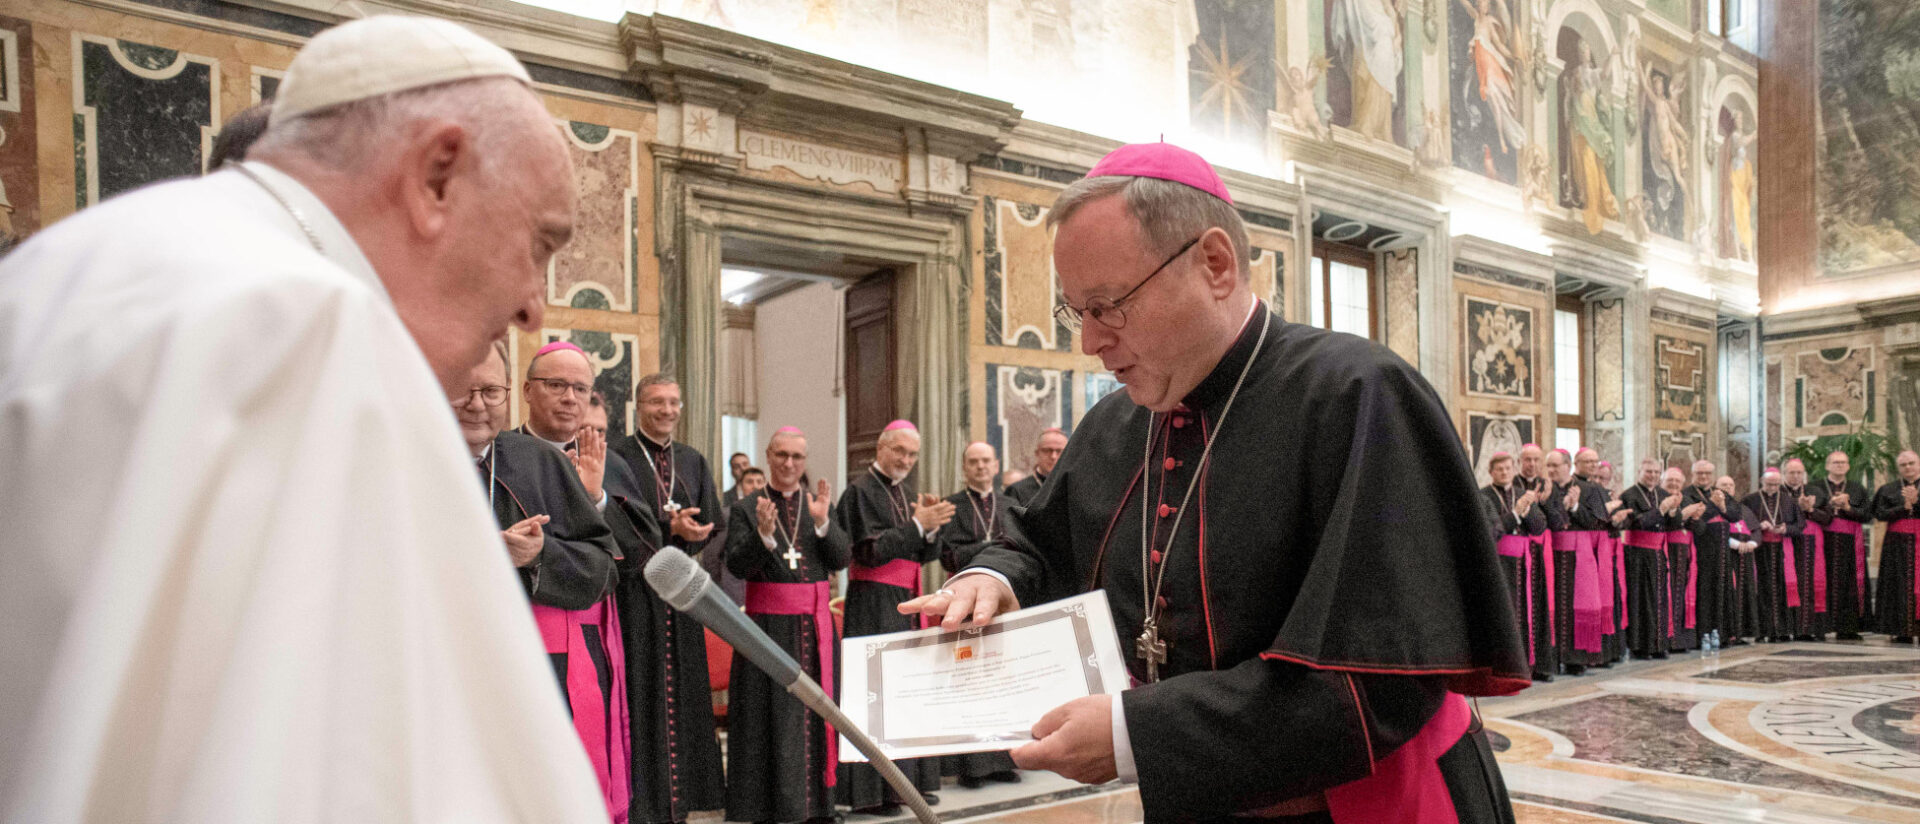 Bischof Georg Bätzing übergibt ein Dokument an Papst Franziskus am 17. November 2022.